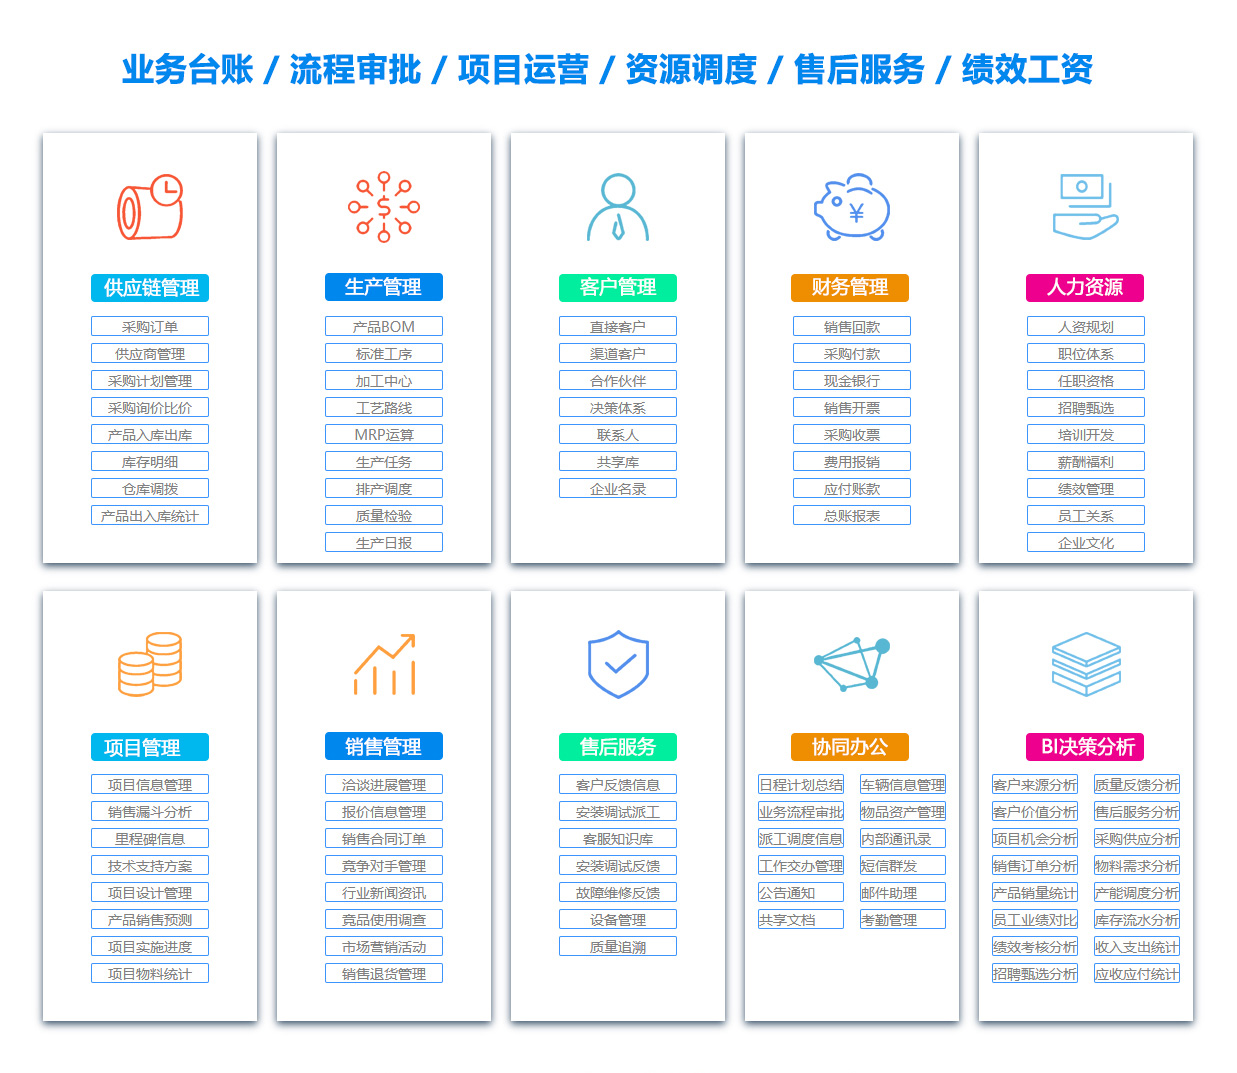 广州MIS:信息管理系统